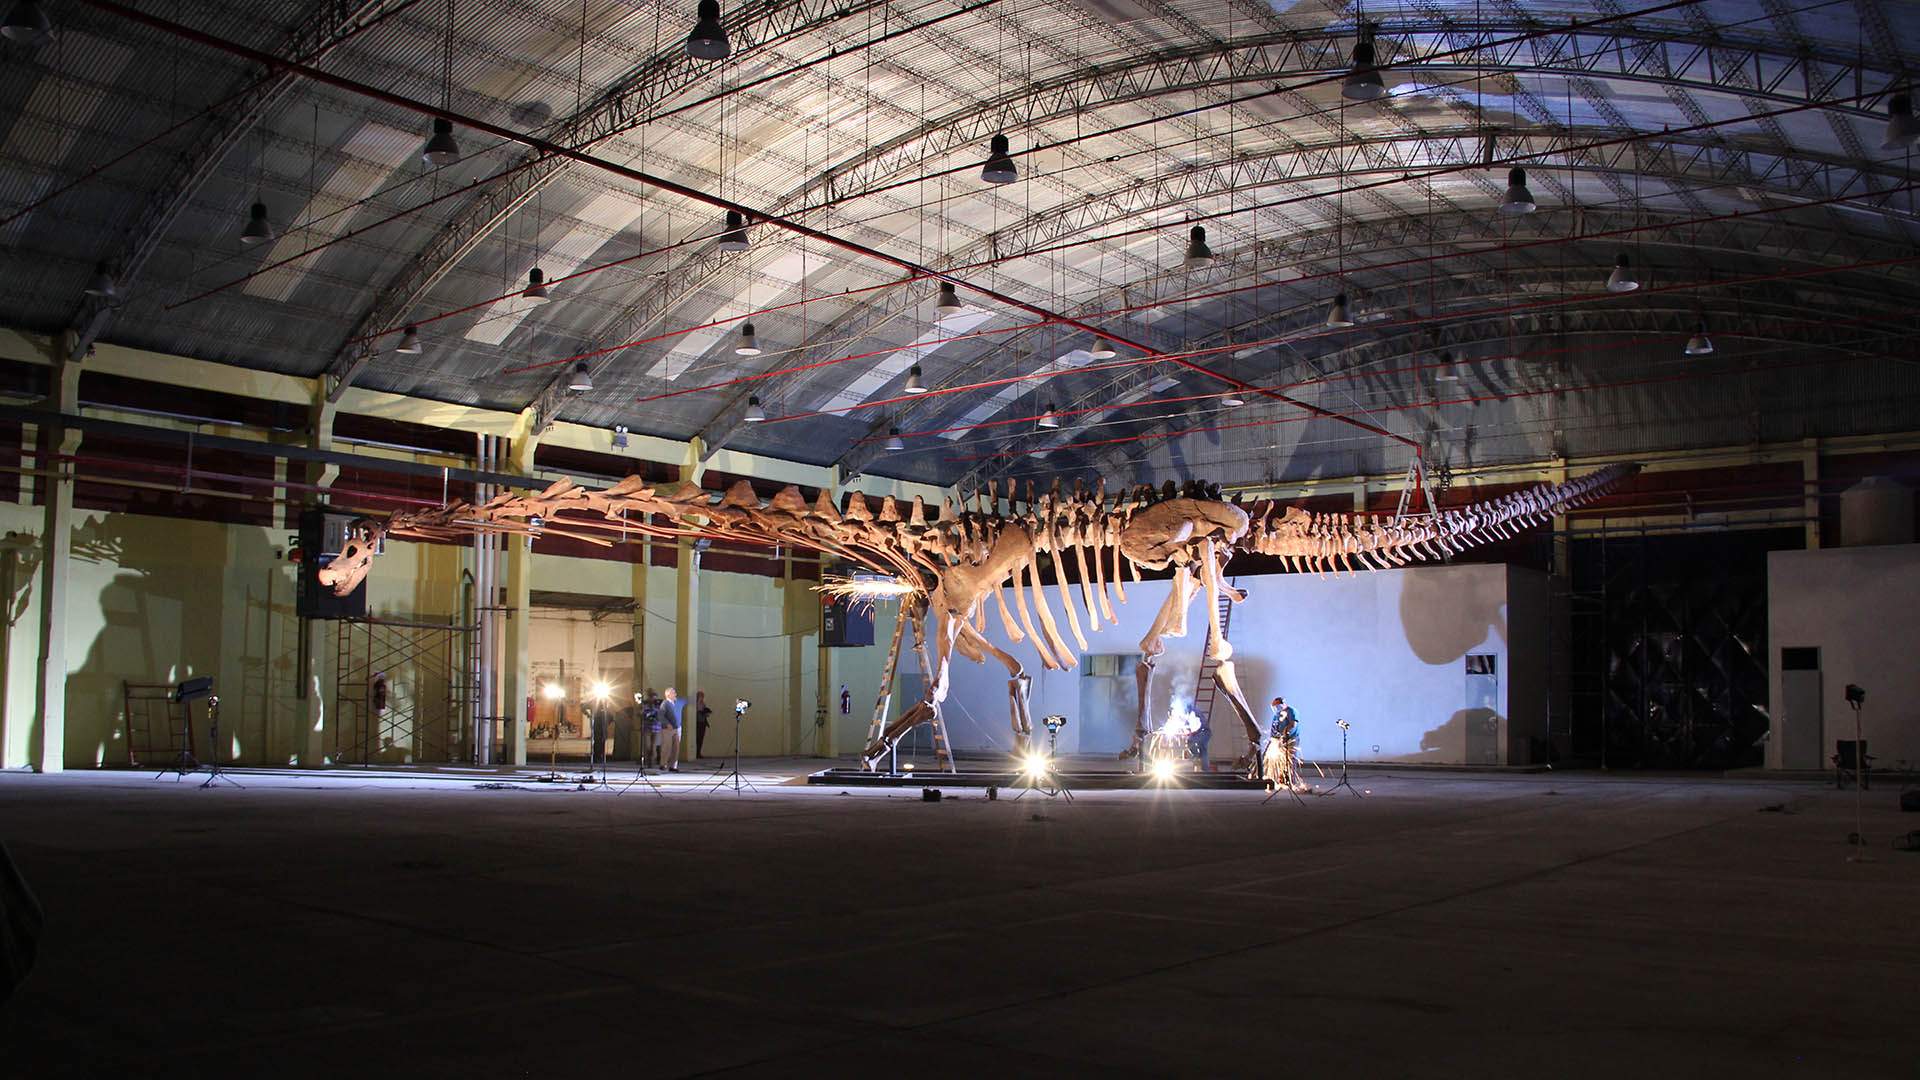 Exposición masiva de dinosaurios con los animales terrestres más grandes conocidos llega al Museo de Queensland